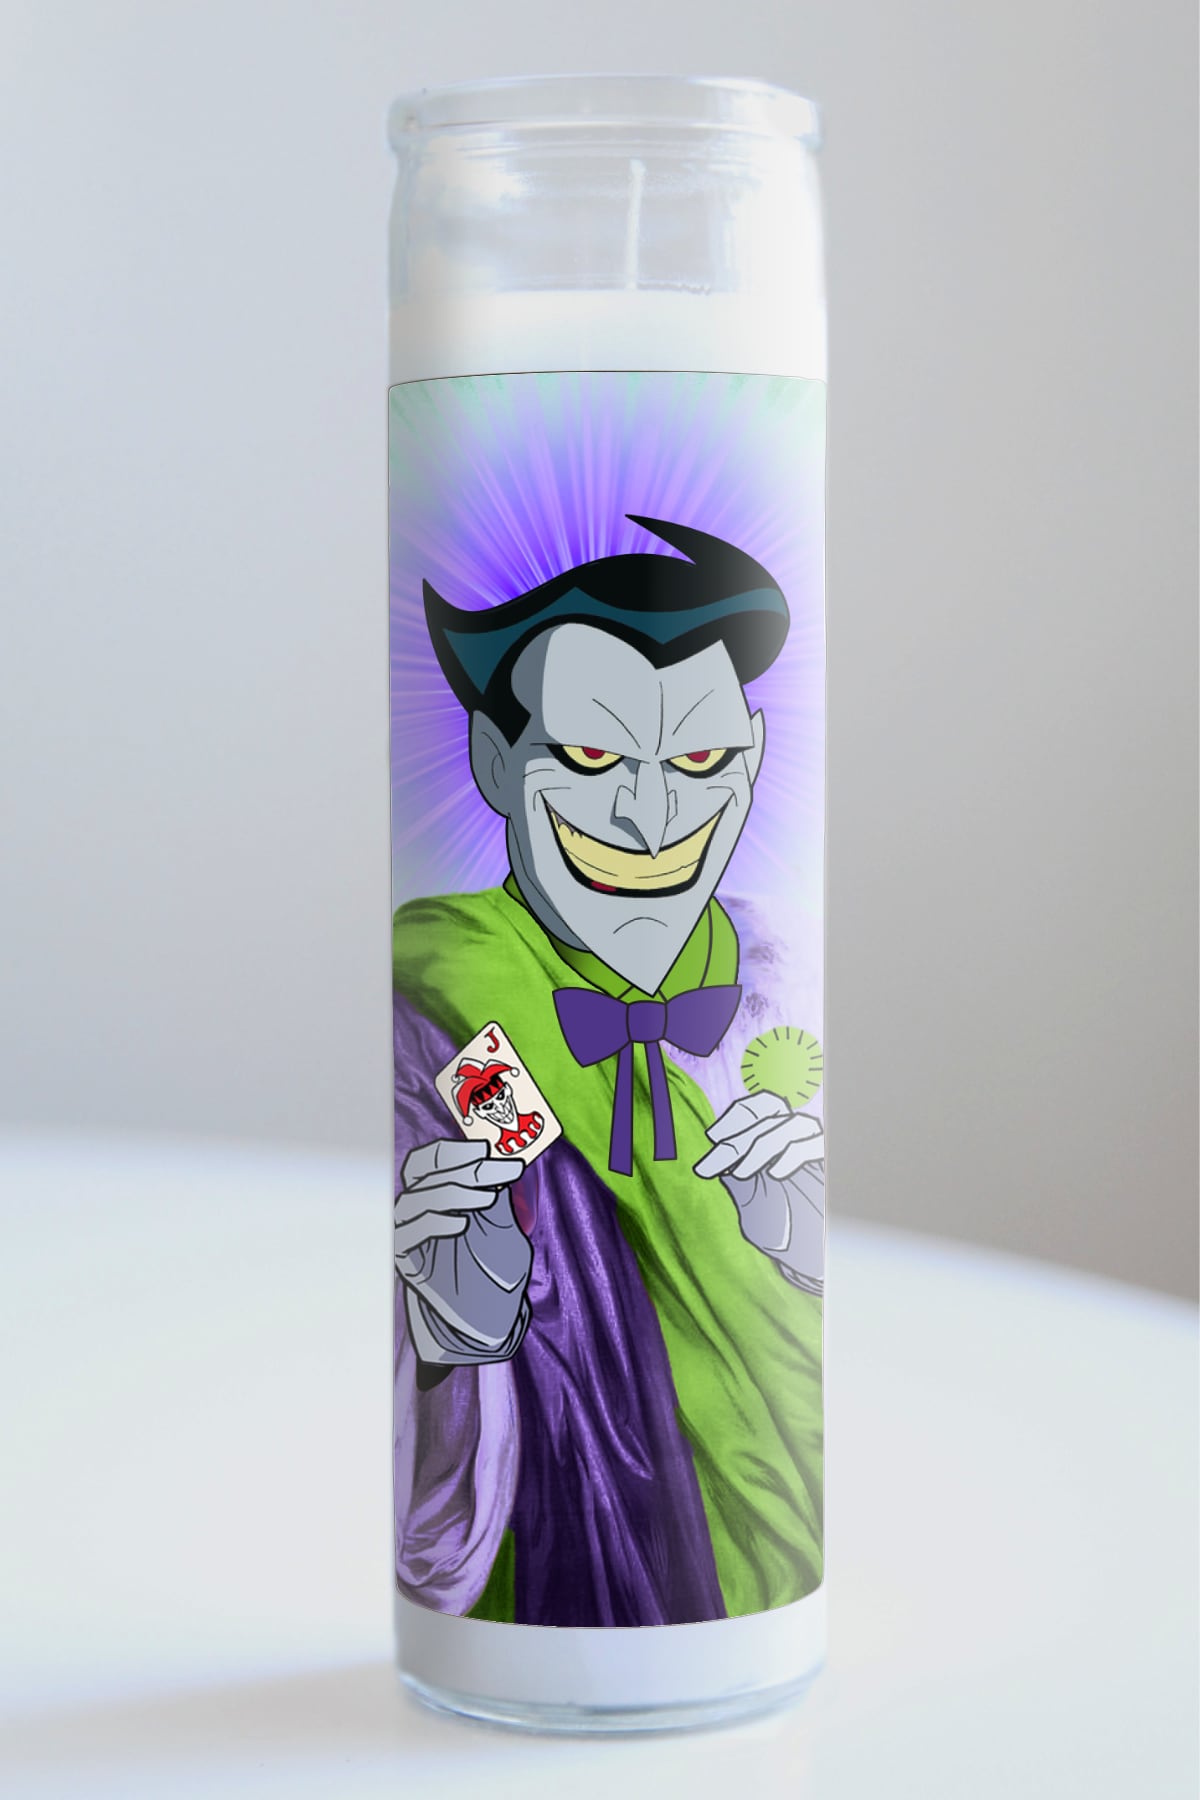 Joker Animated Candle